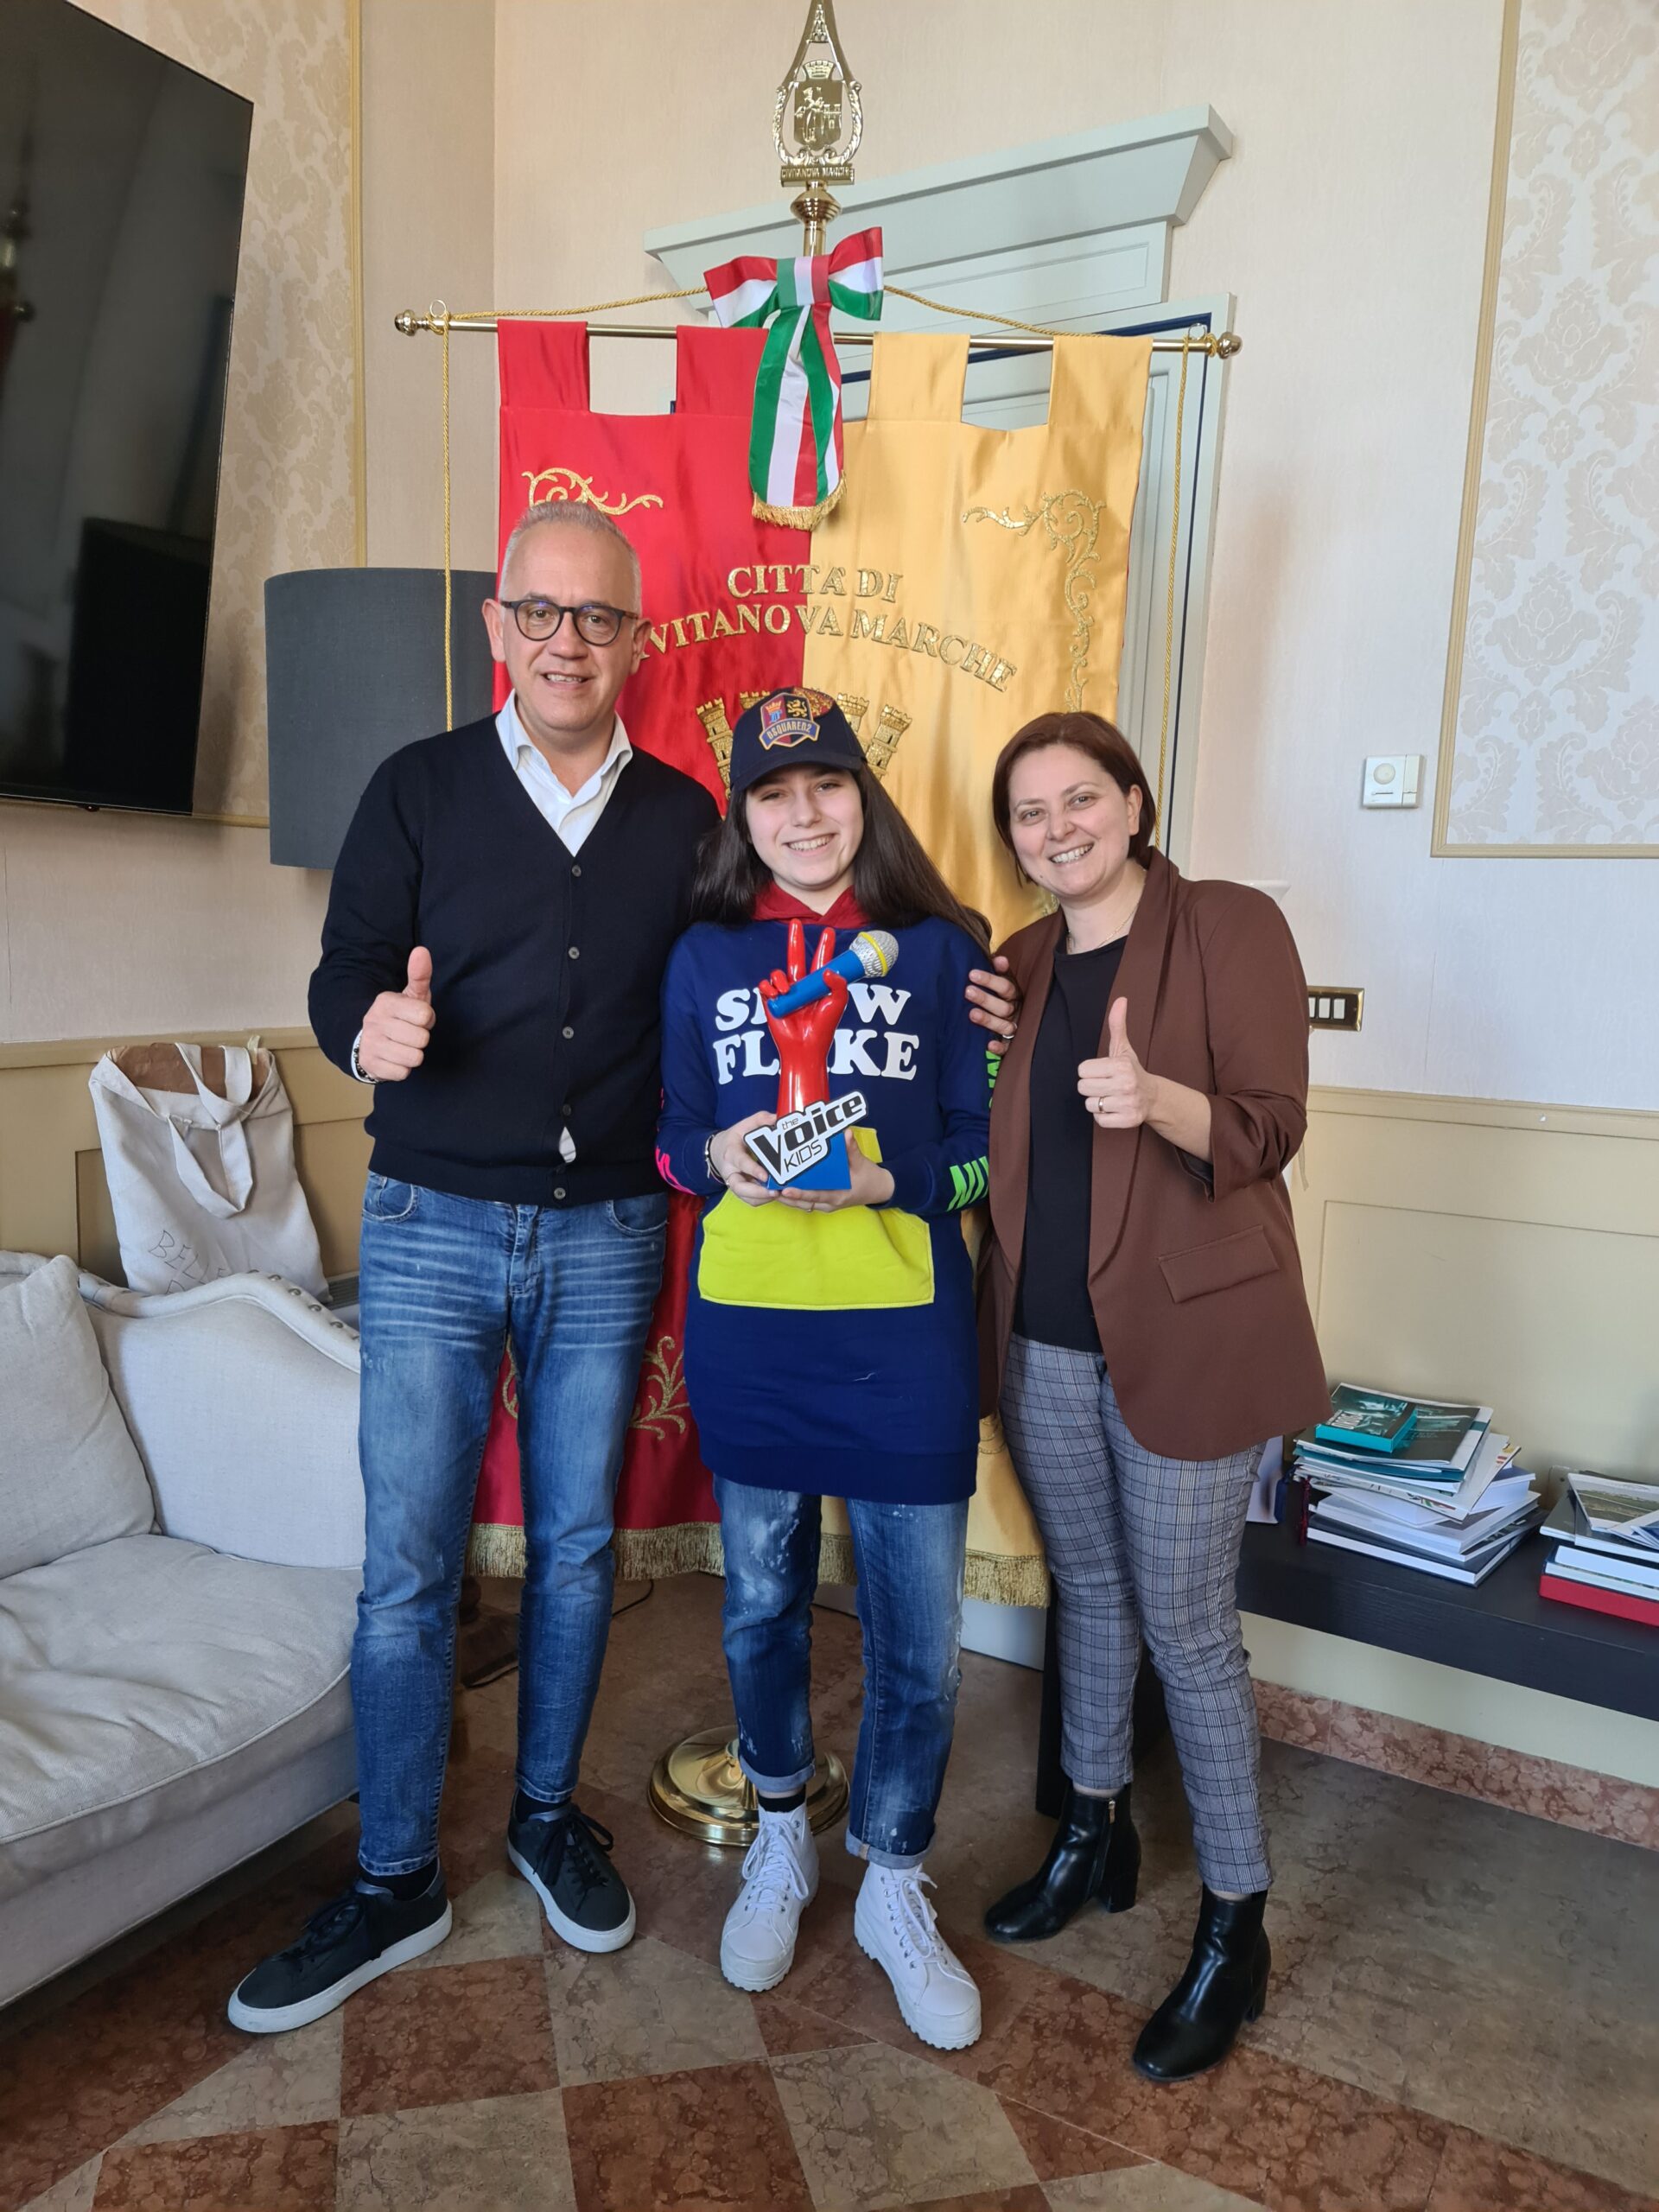 Melissa Agliottone vincitrice di The Voice Kid ricevuta in Comune a Civitanova Marche